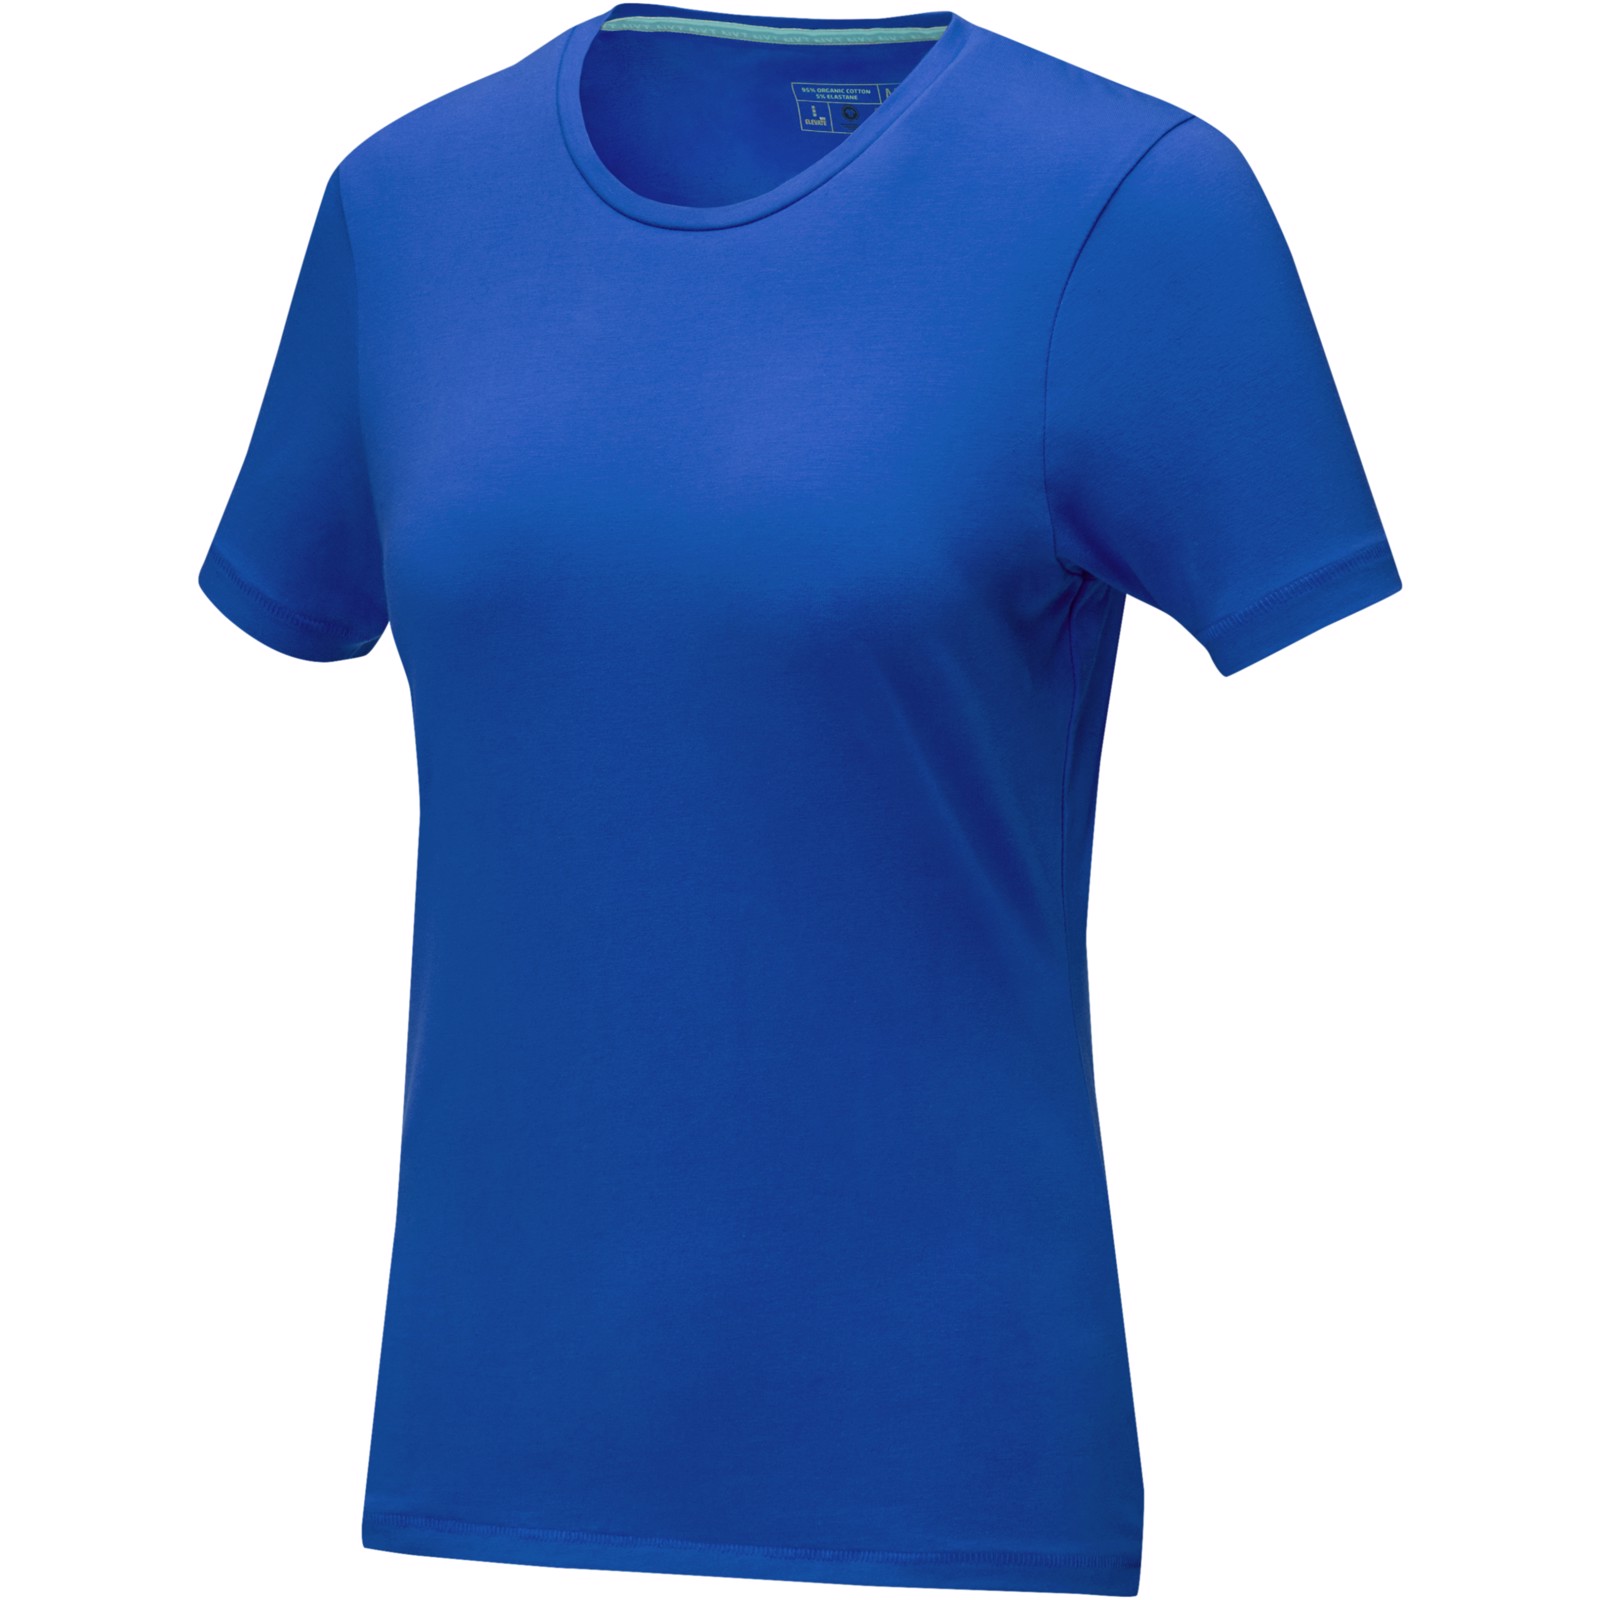 Balfour short sleeve women's GOTS organic t-shirt - Blue / XXL